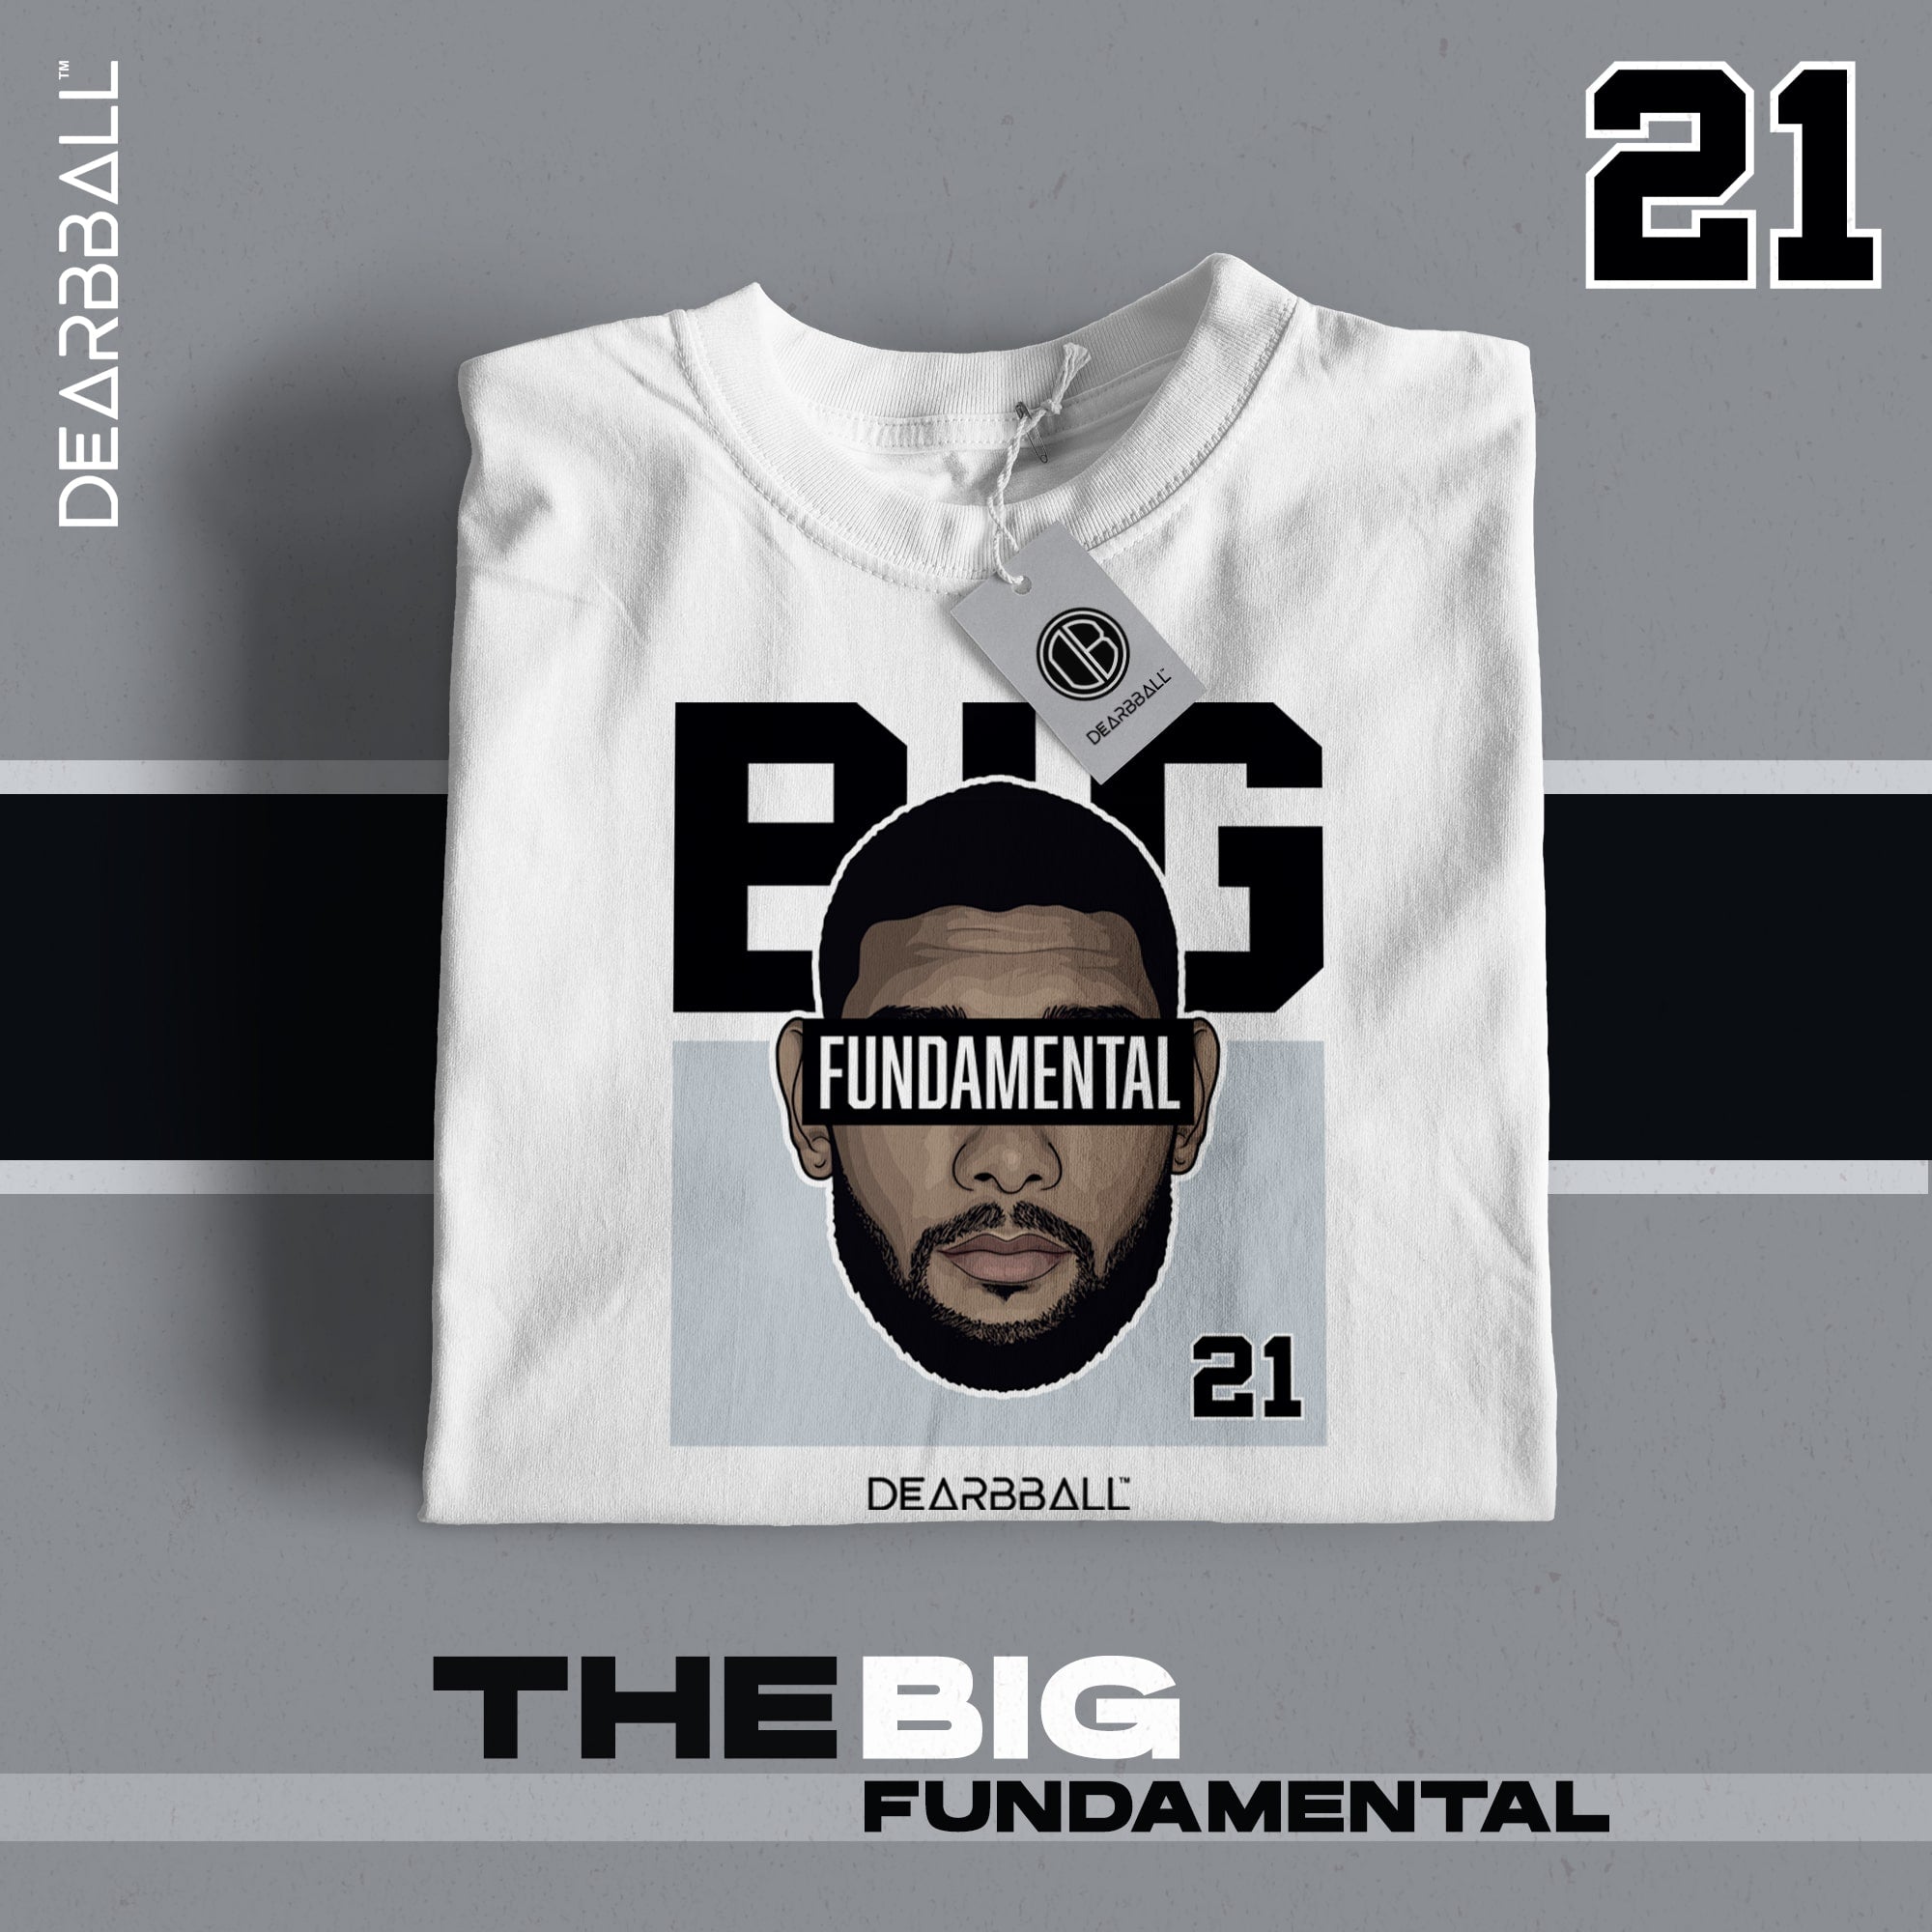 [ENFANT] DearBBall T-Shirt - Big Fundamental Edition